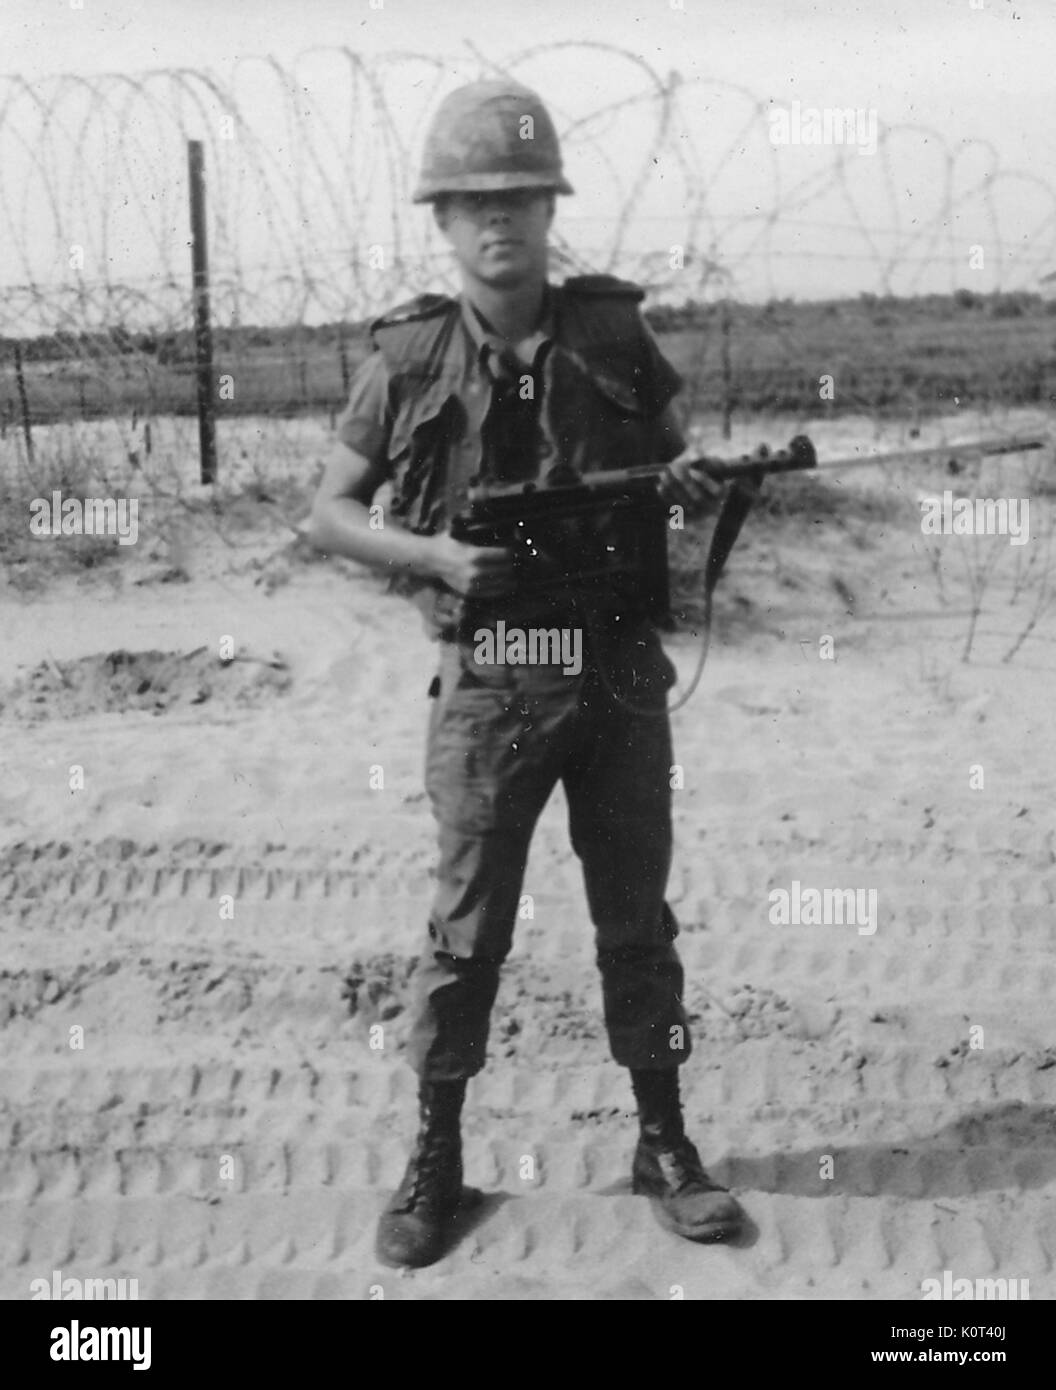 Die Vereinigten Staaten tragen seiner Soldaten bekämpfen, einheitliche und Helm, während eine Waffe, er steht auf den Spuren von einem großen militärischen Fahrzeug links, Stacheldraht zaun im Hintergrund, Vietnam, 1967 gesehen werden kann. Stockfoto